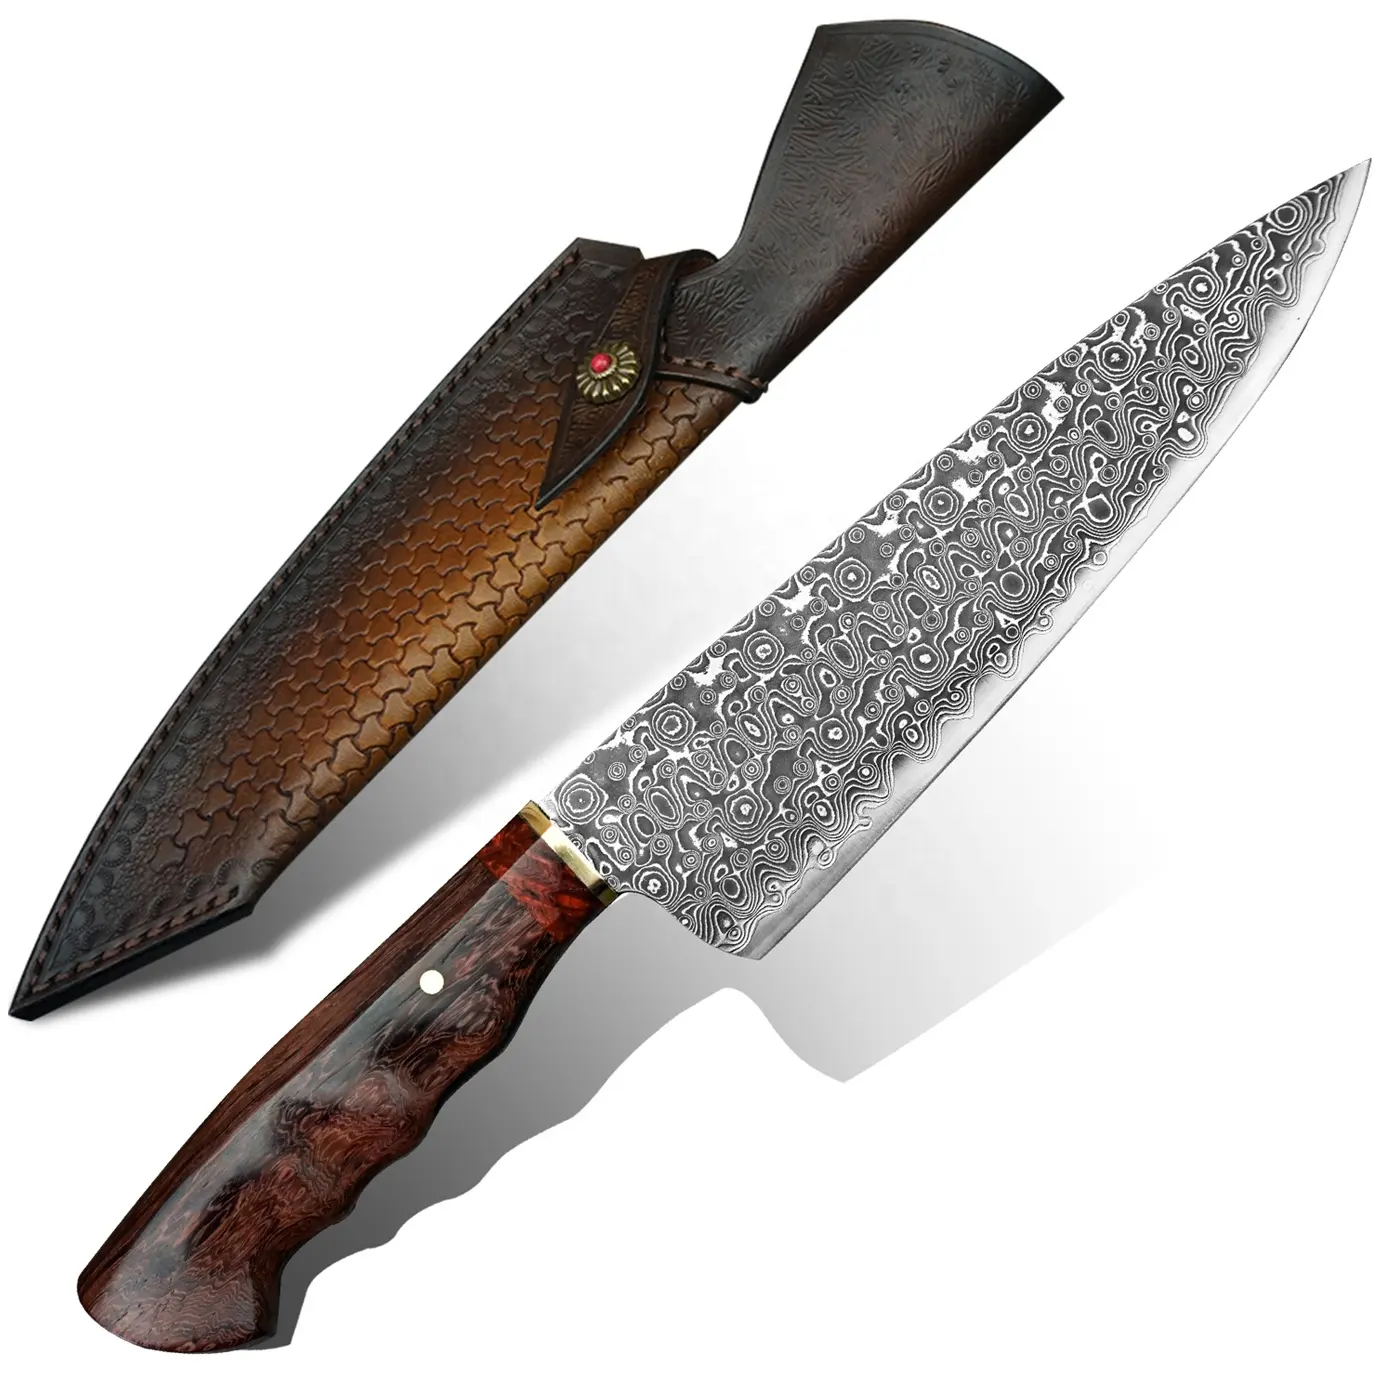 पेशेवर रसोई महाराज चाकू 8 इंच चमड़े म्यान के साथ शीशम संभाल दमिश्क स्टील के रसोई महाराज चाकू